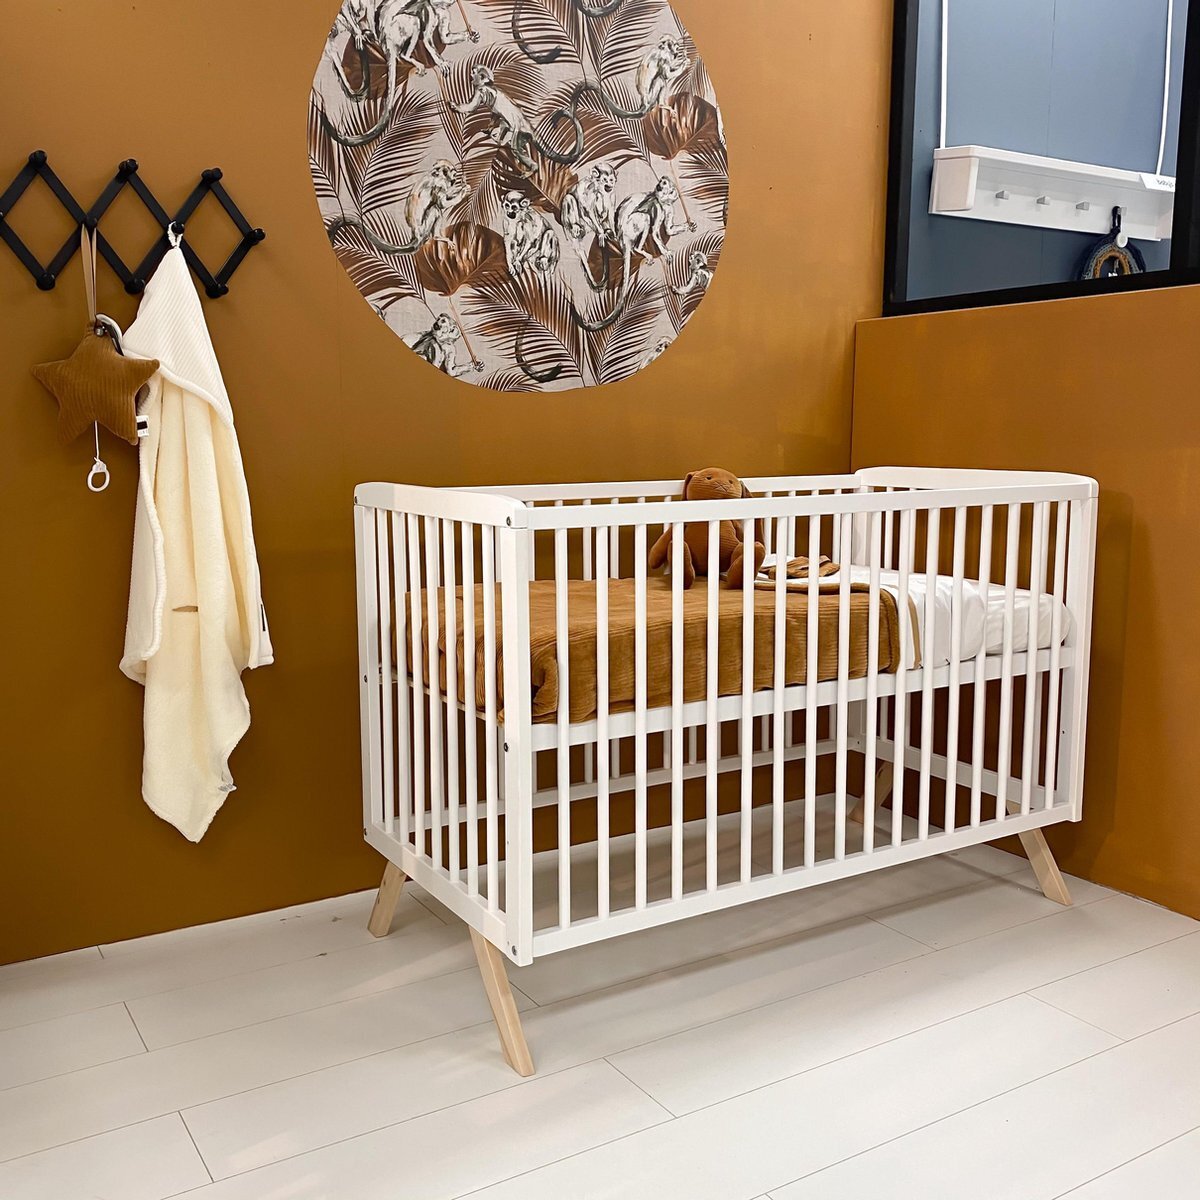 Cabino Baby bed / Ledikant Teresa met Verstelbare bodem - Wit 60 x 120 cm